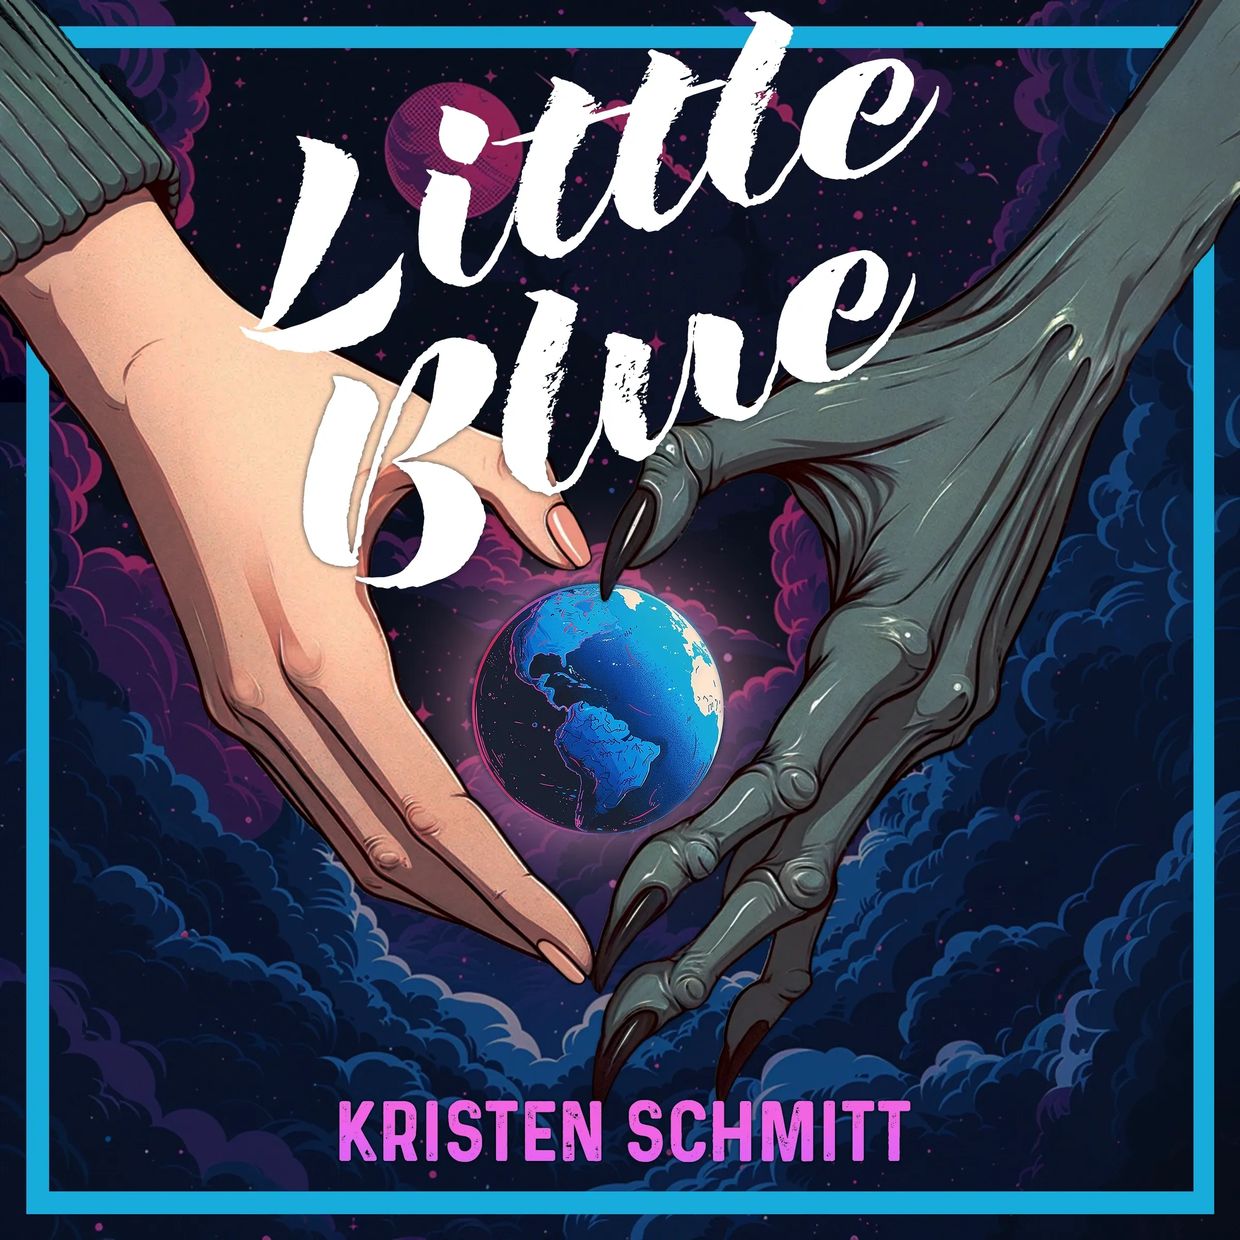 Little Blue, a novel by Kristen Schmitt